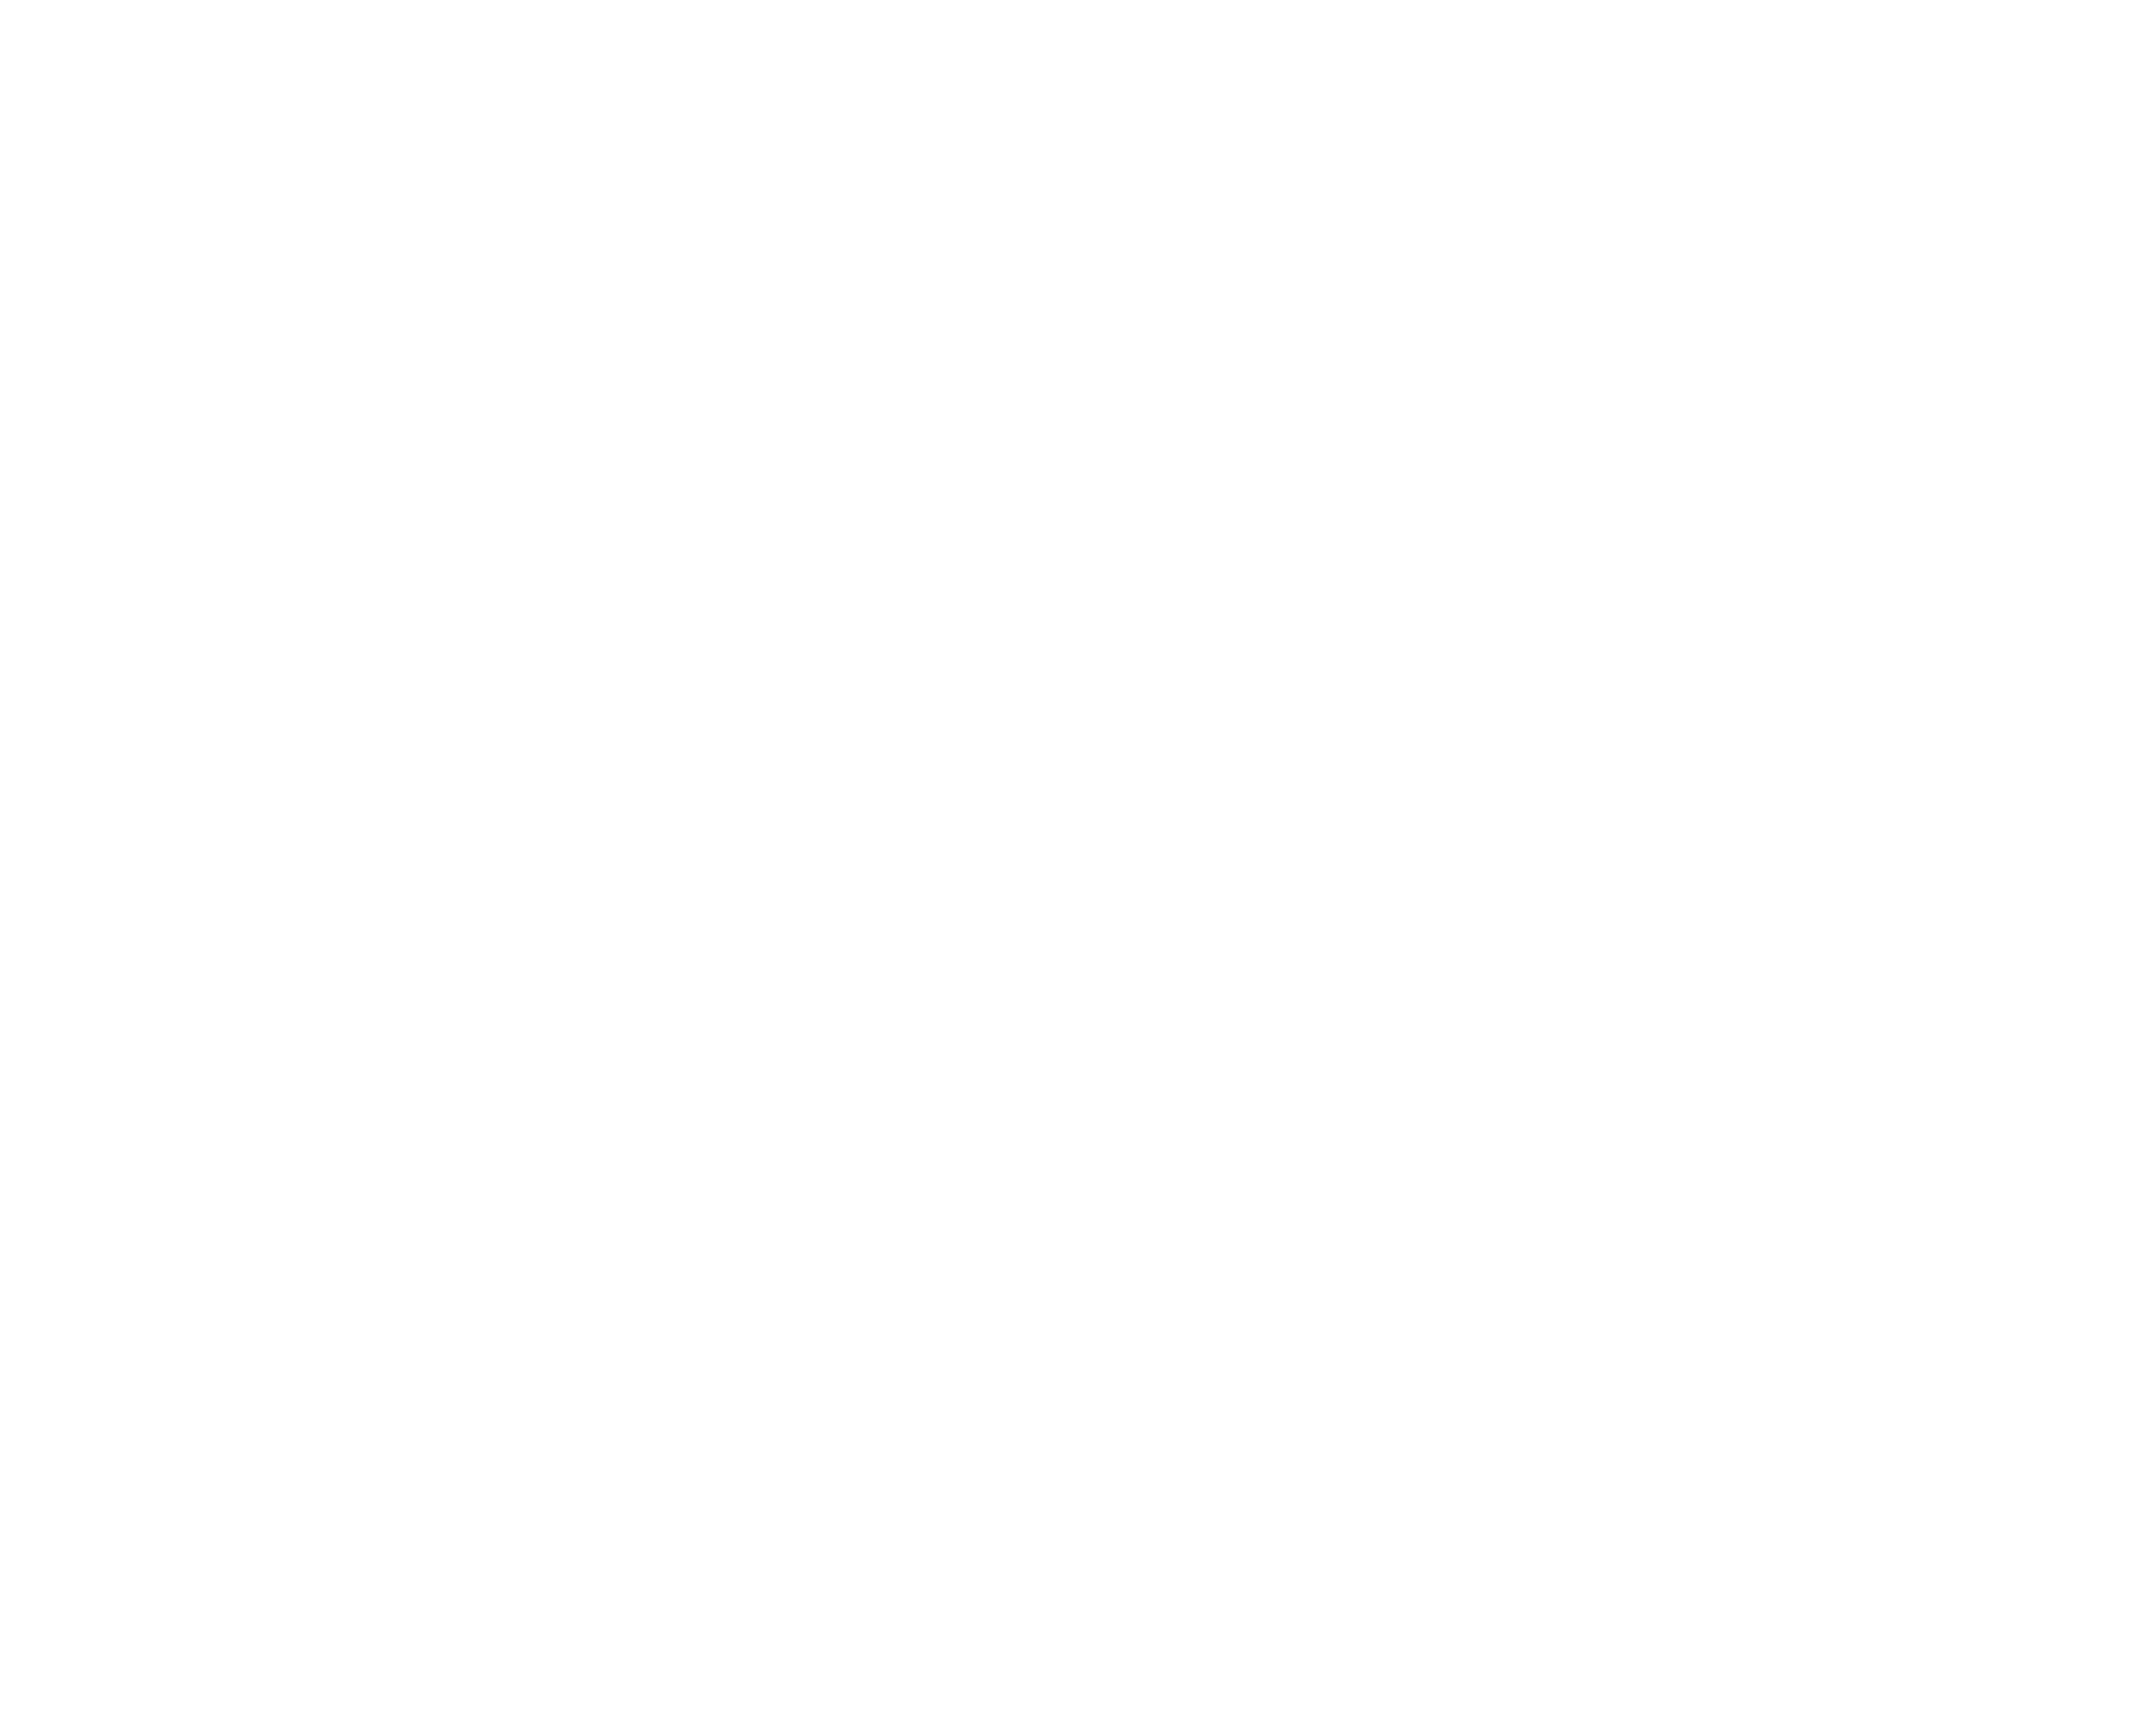 Alec Levenson